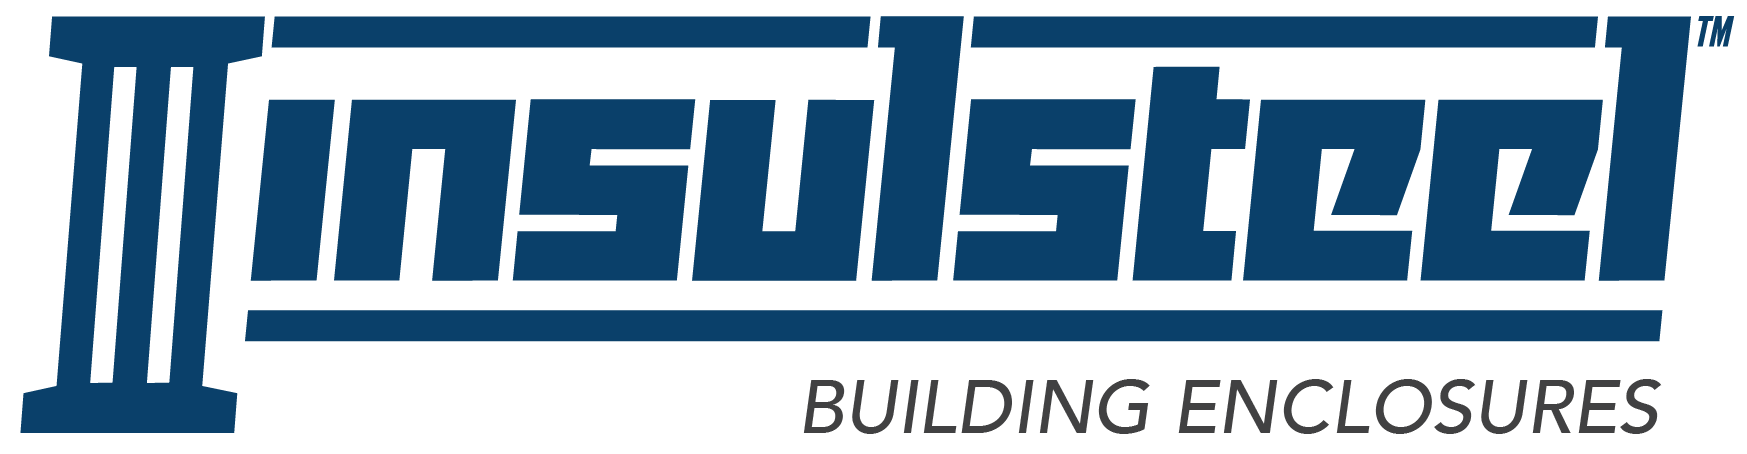 Insulsteel company logo